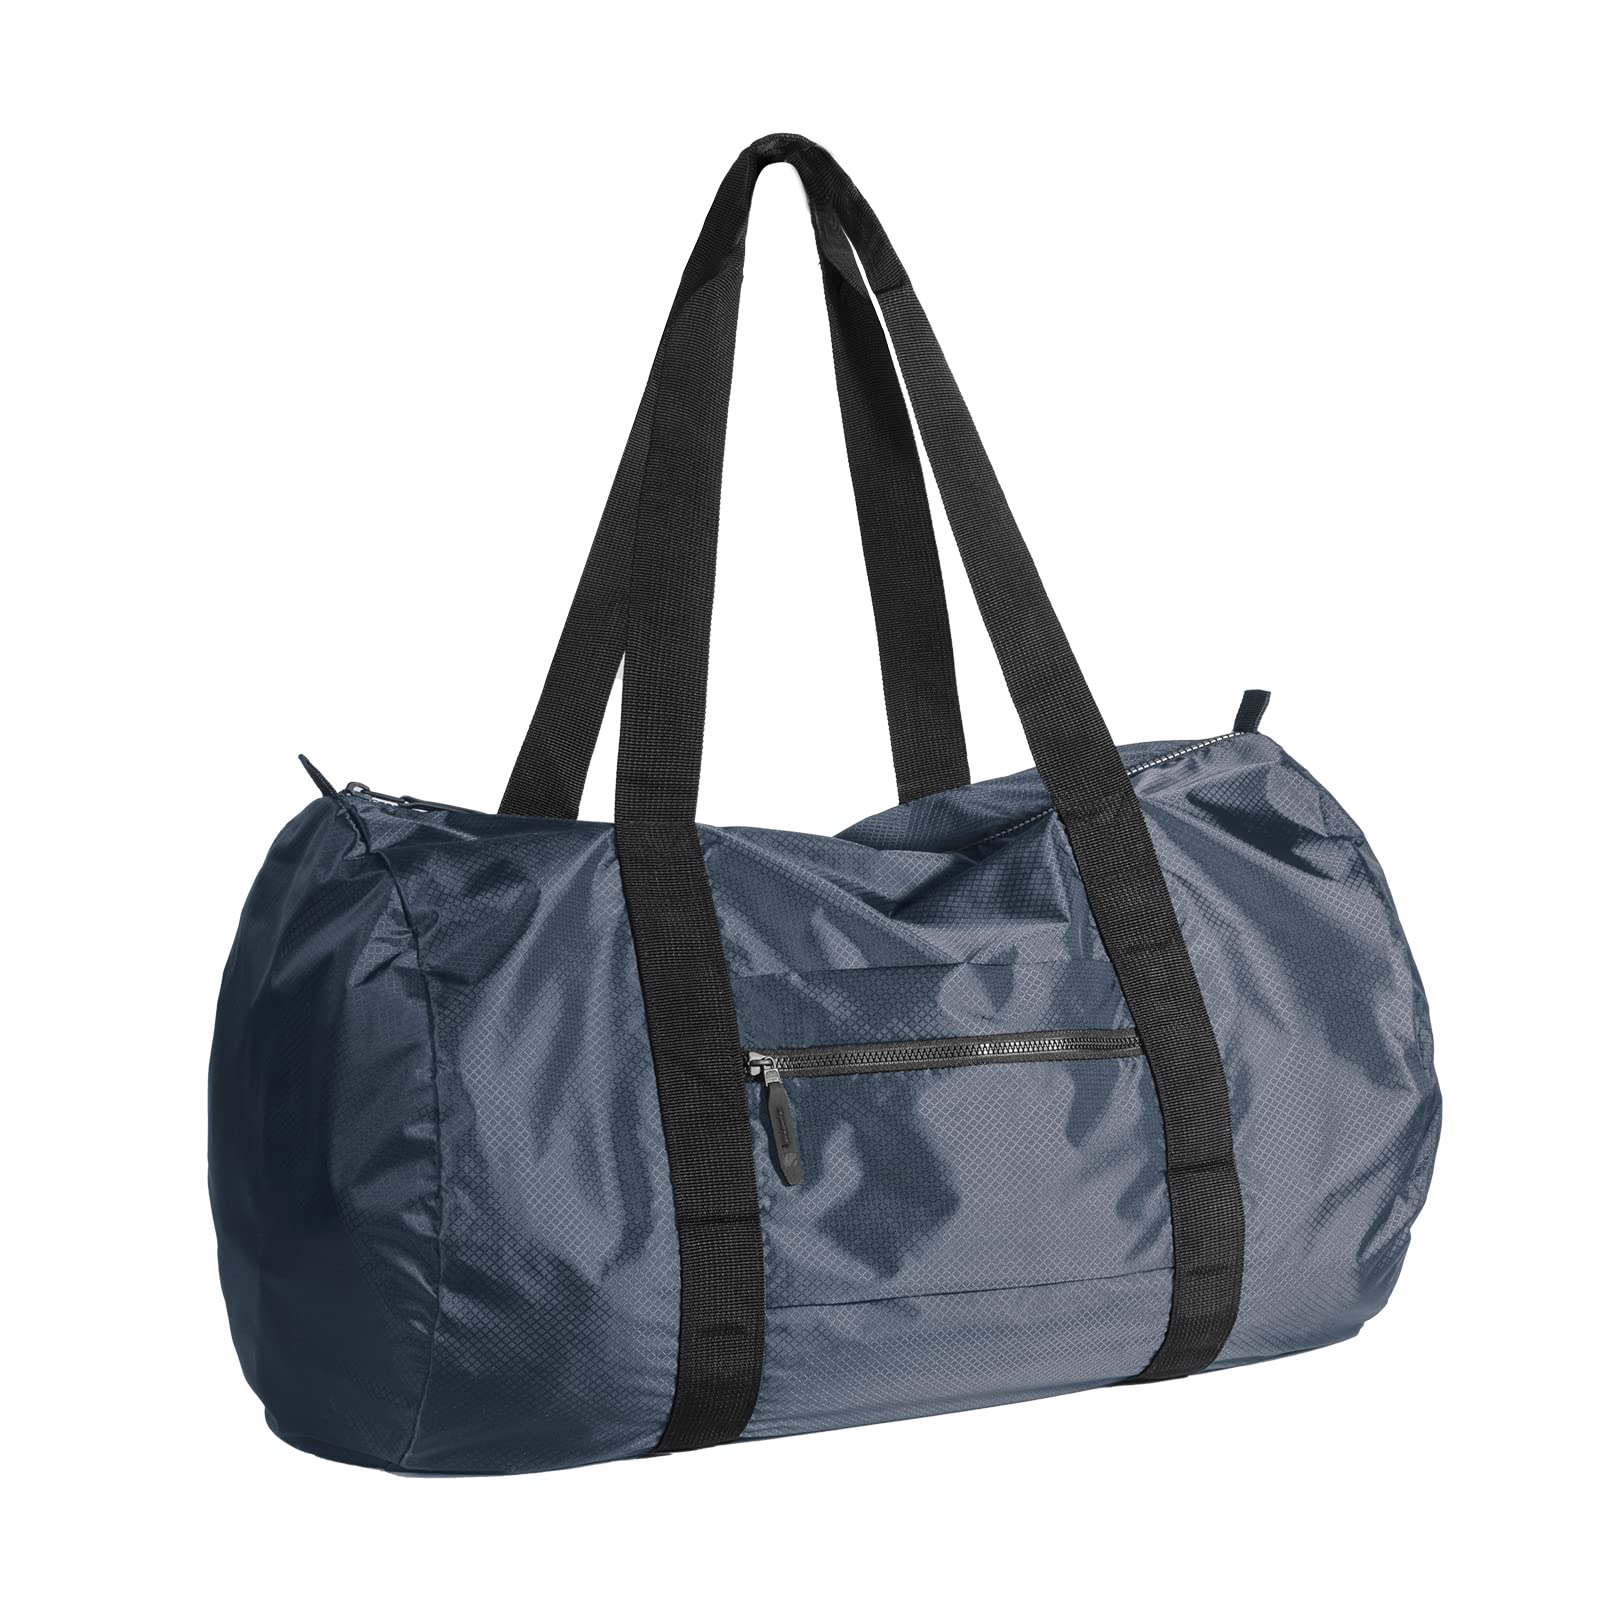 BAGSTEP Trendy Waterproof Luggage Bag / Travel Bag / Small Travel bag / Duffle  Bag / Storage bag For Men,Women